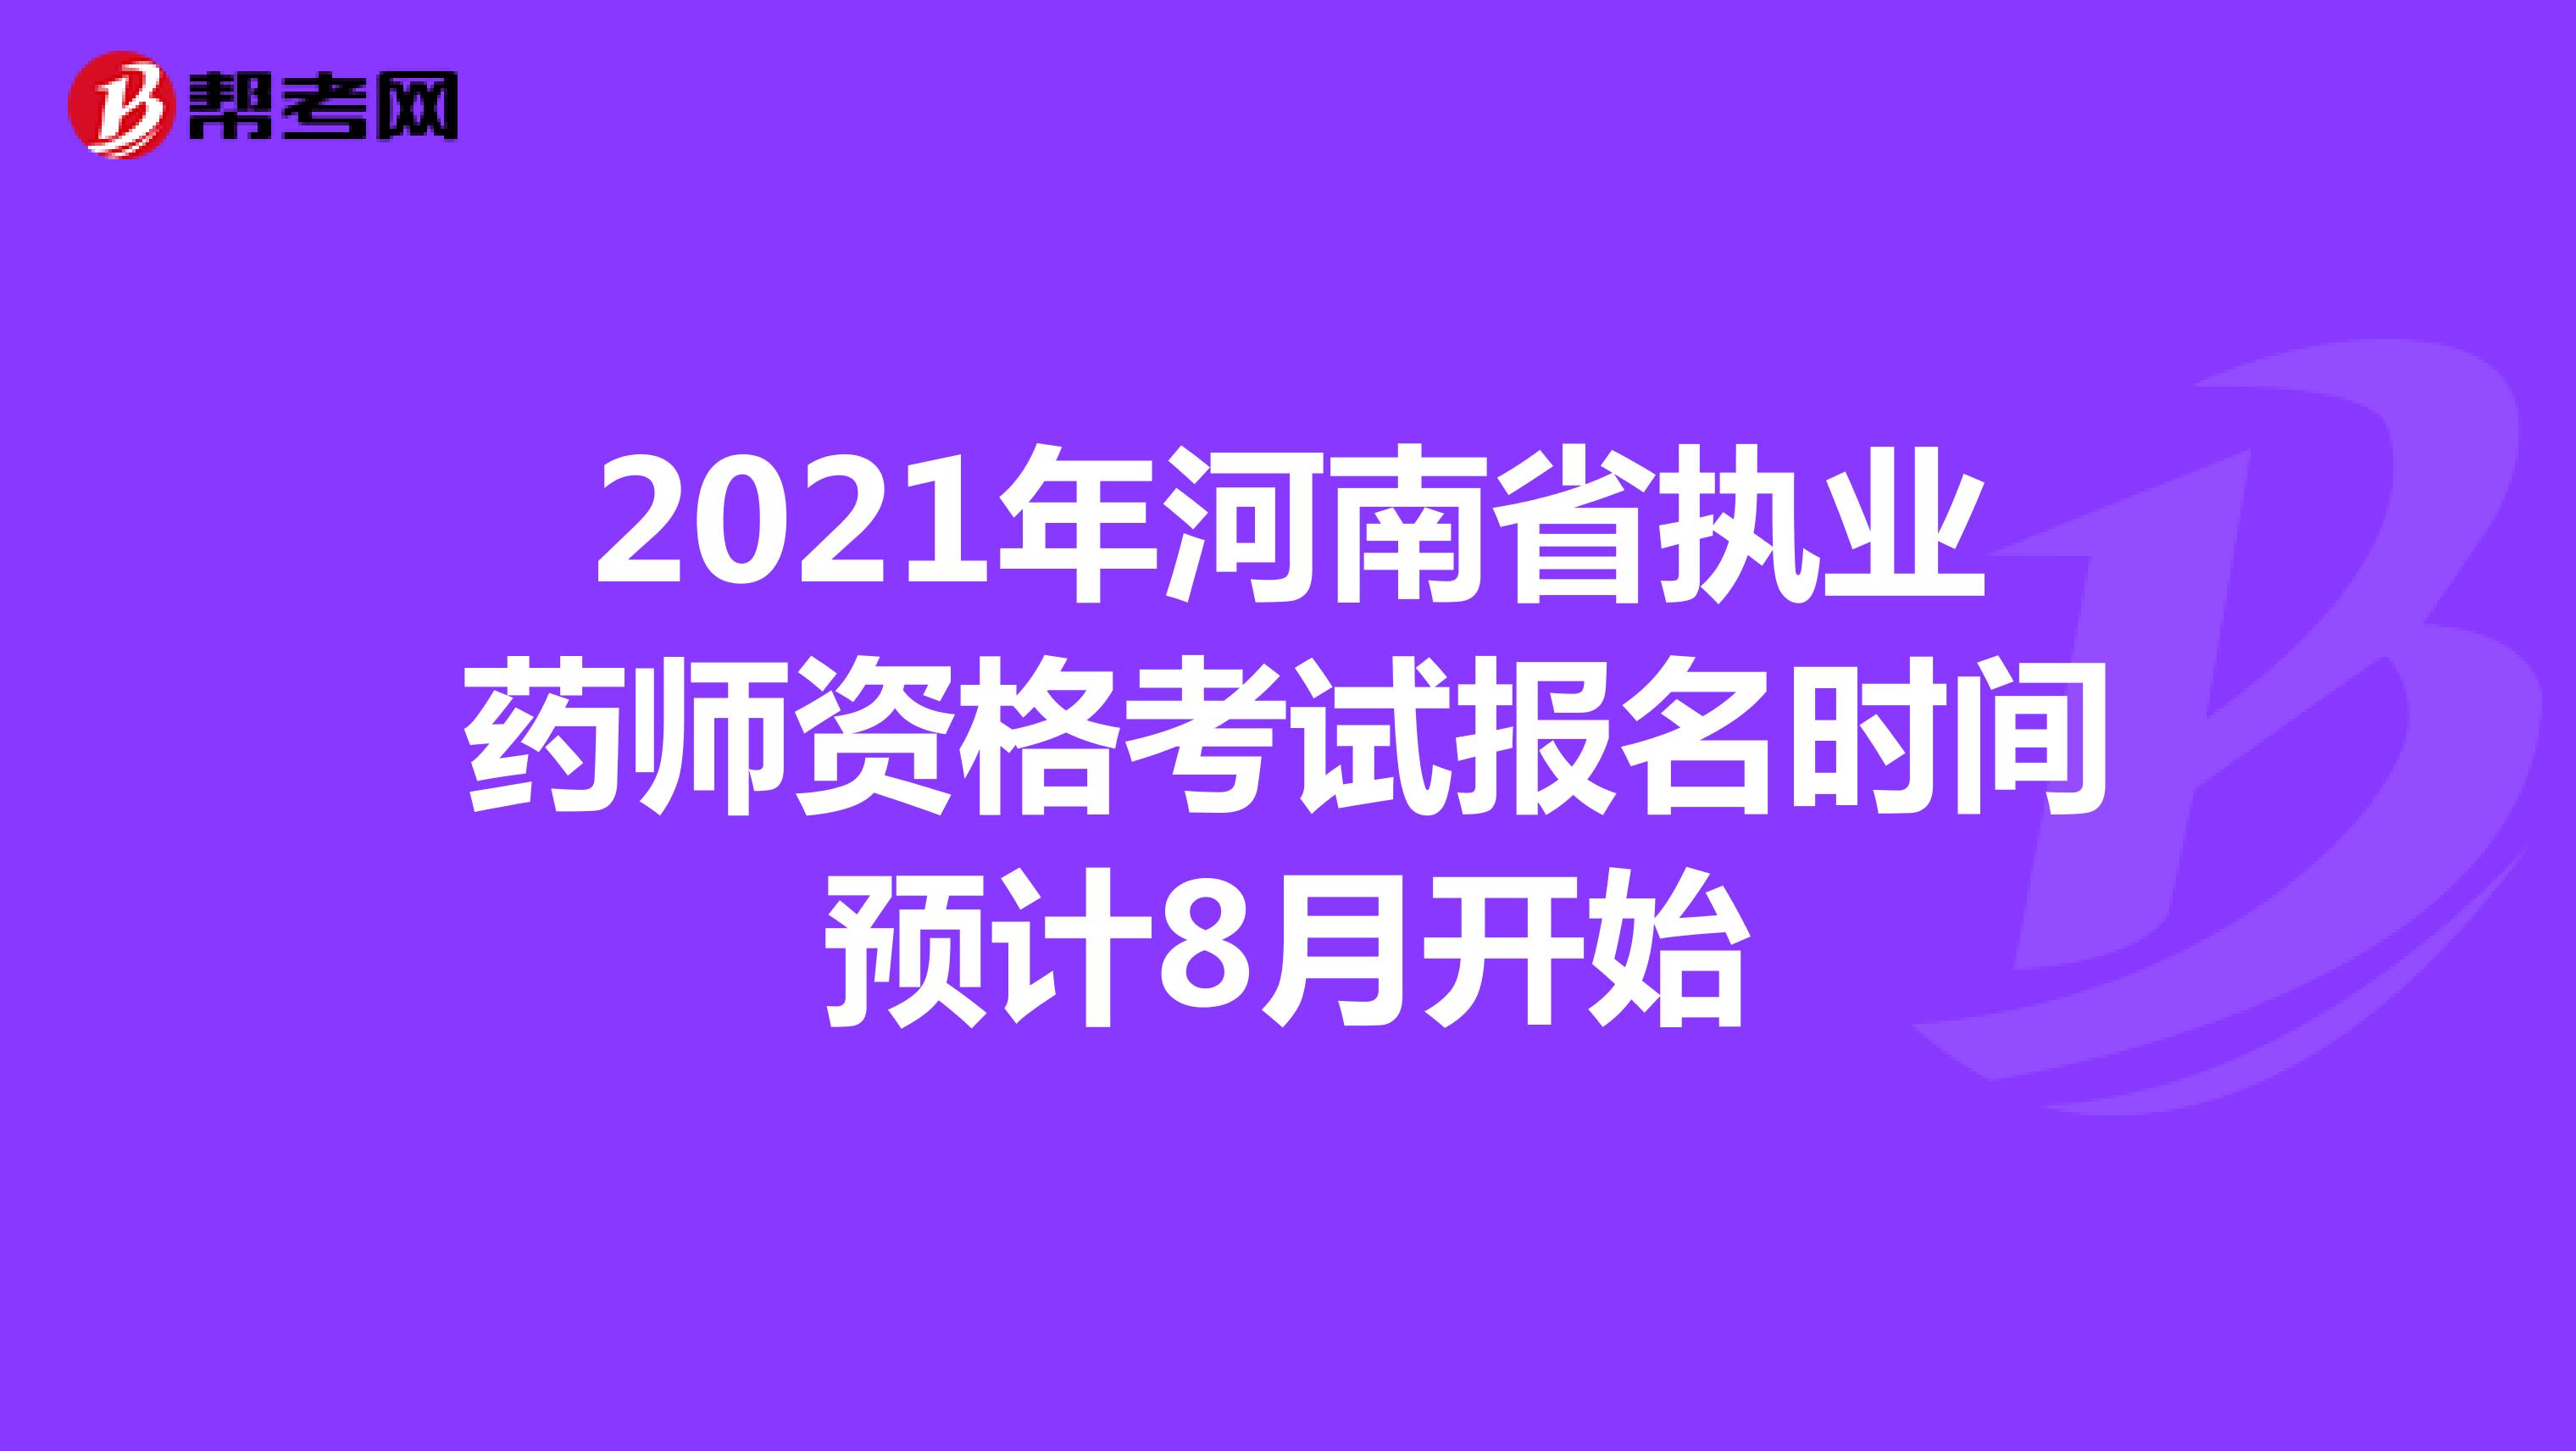 2021年河南省执业药师资格考试报名时间预计8月开始